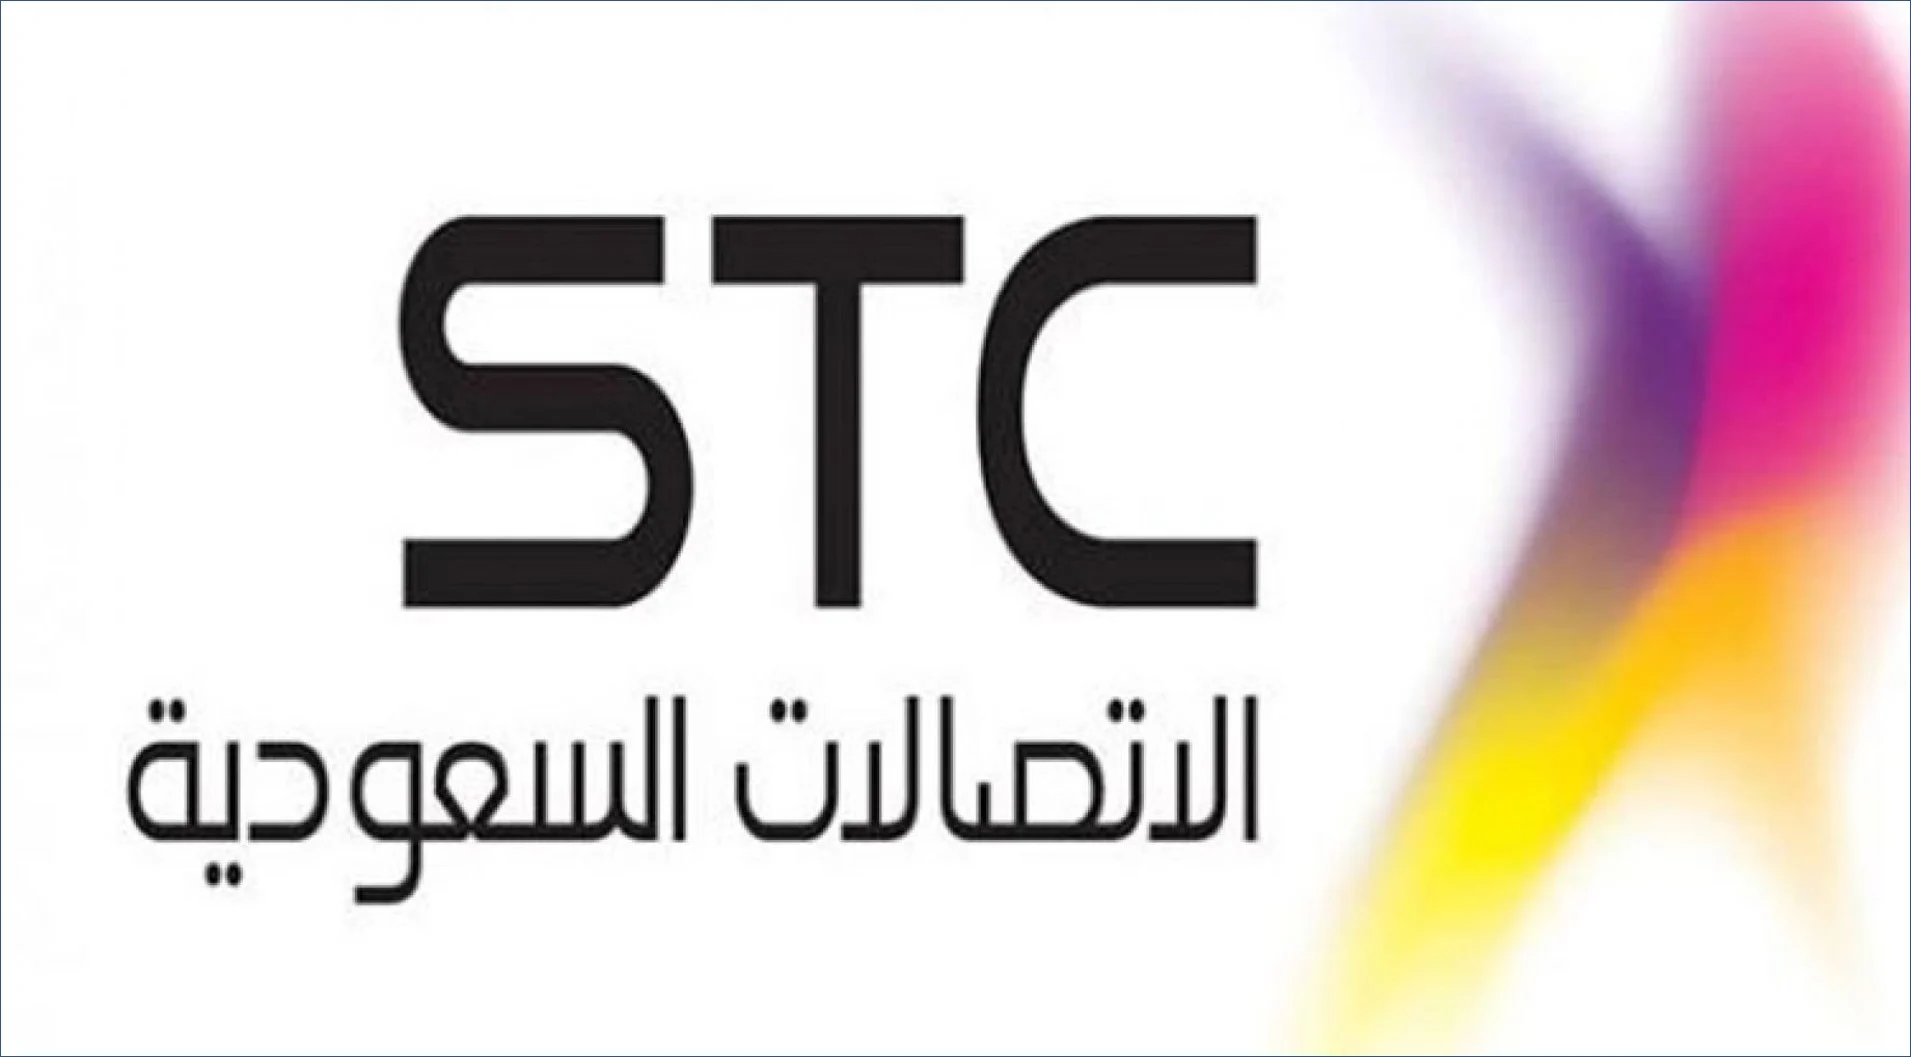  STC السعودية تعلن فتح باب التوظيف لهذه التخصصات